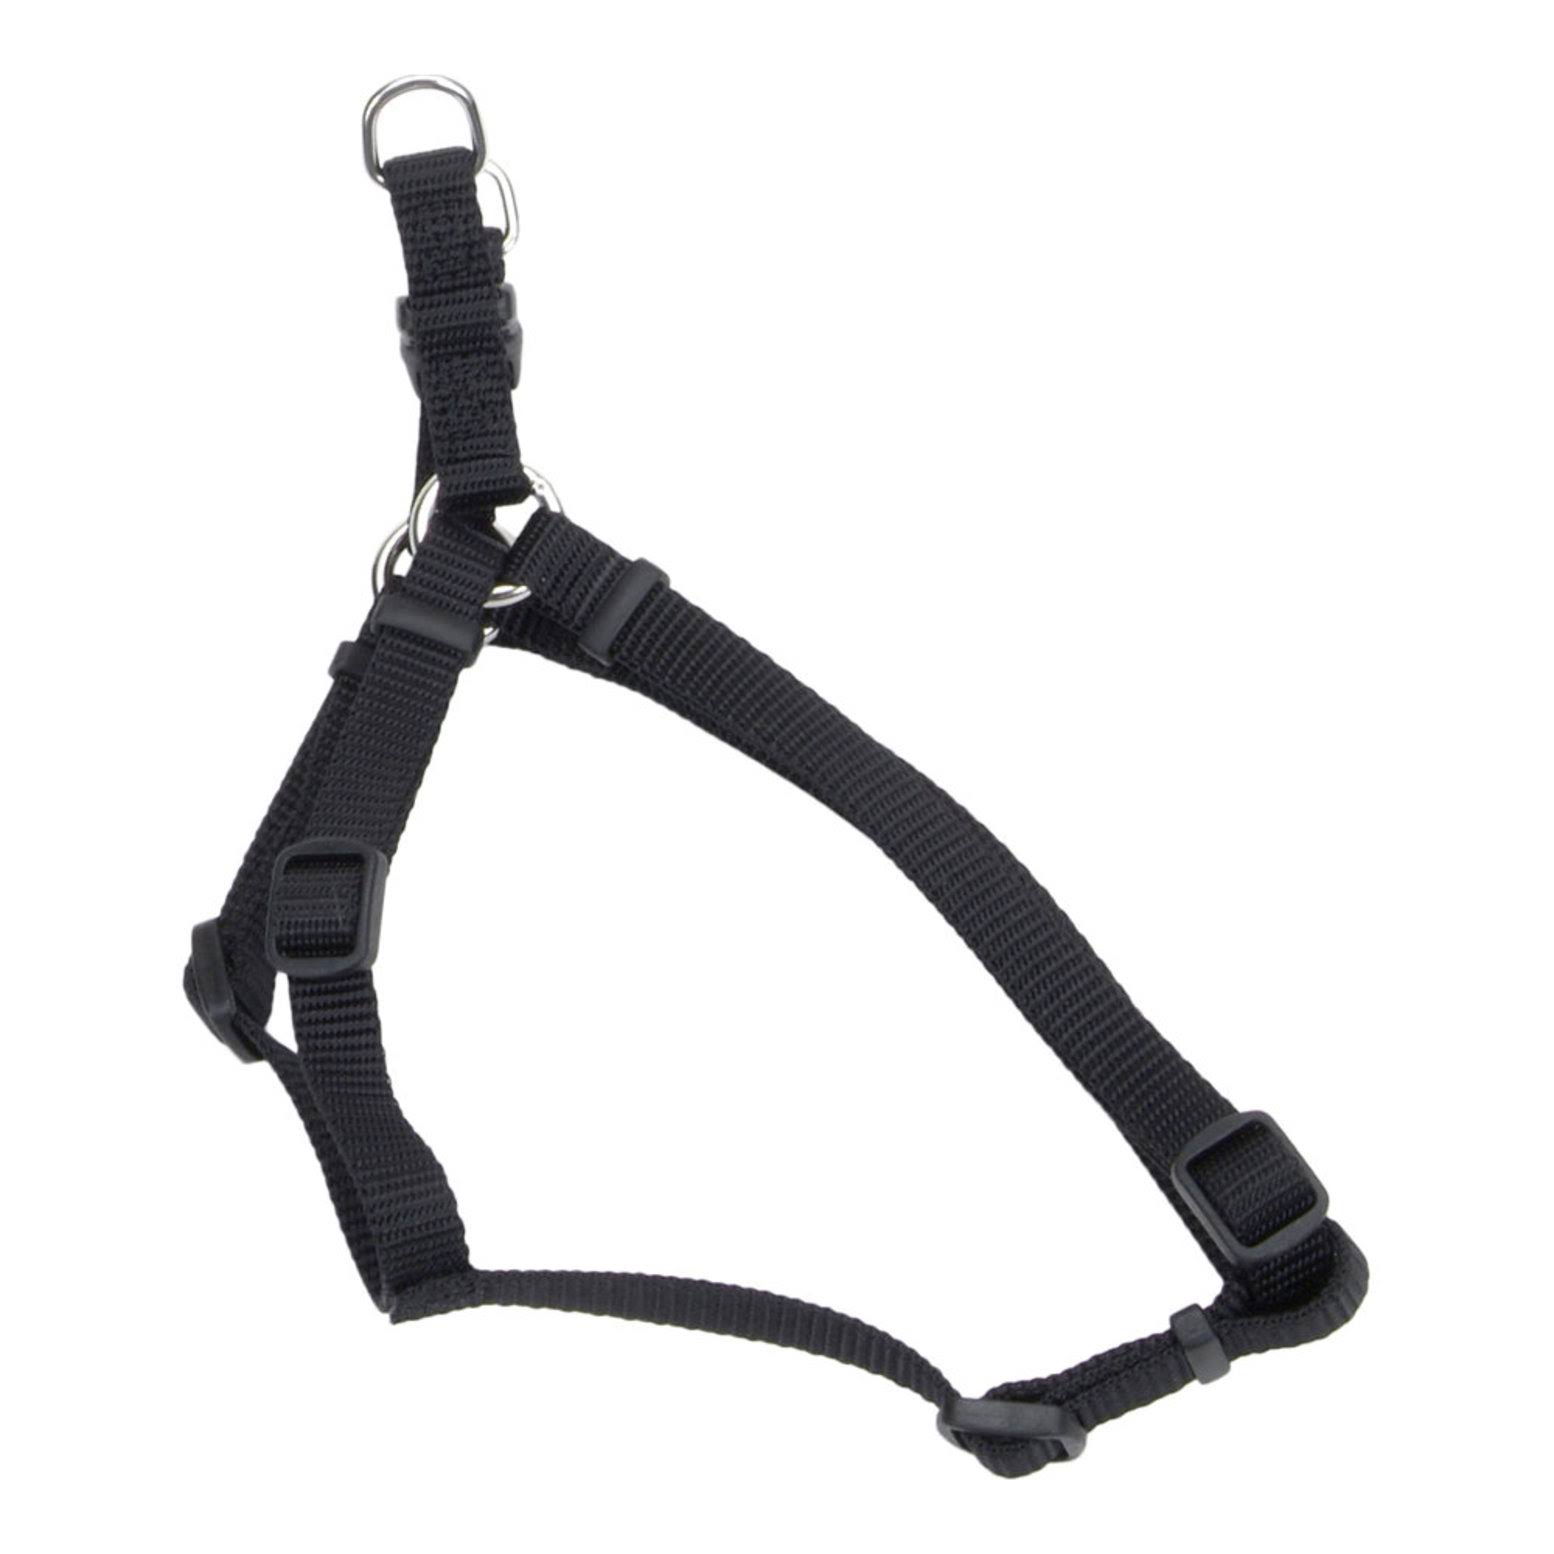 Comfort Wrap Adjustable Dog Harness - Black